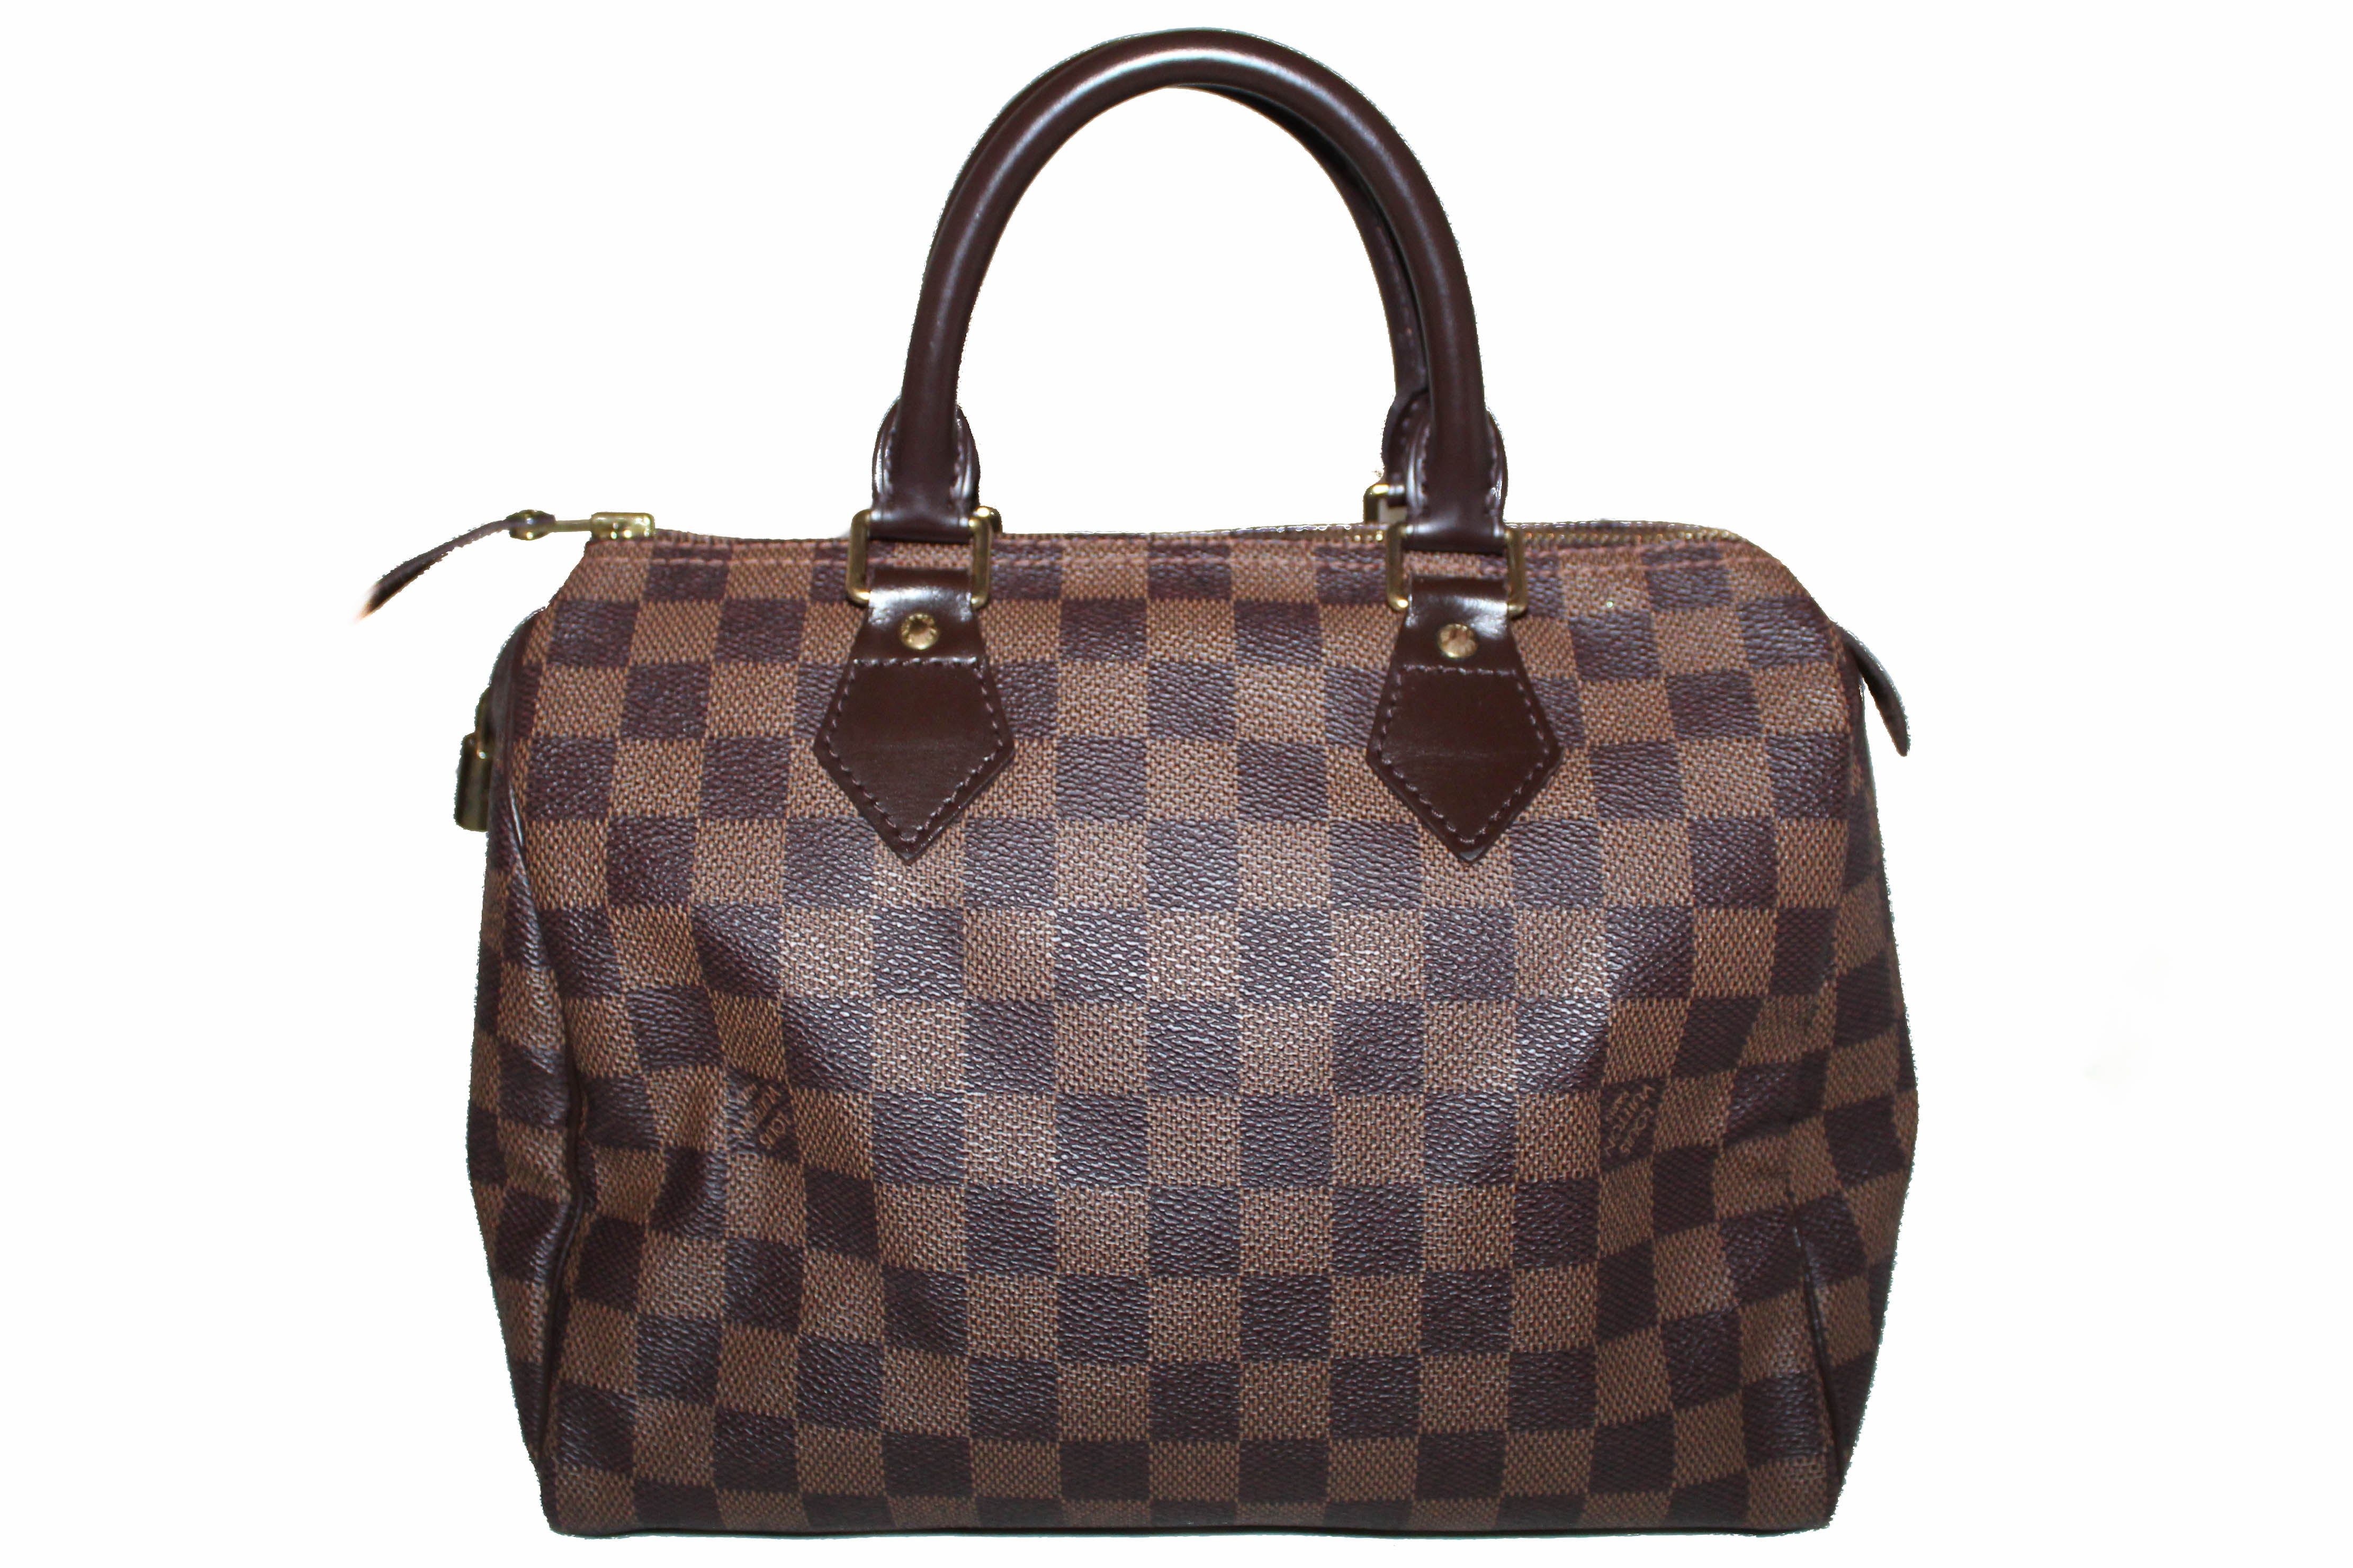 Authentic Louis Vuitton Damier Ebene Speedy 25 Hand Bag – Paris Station